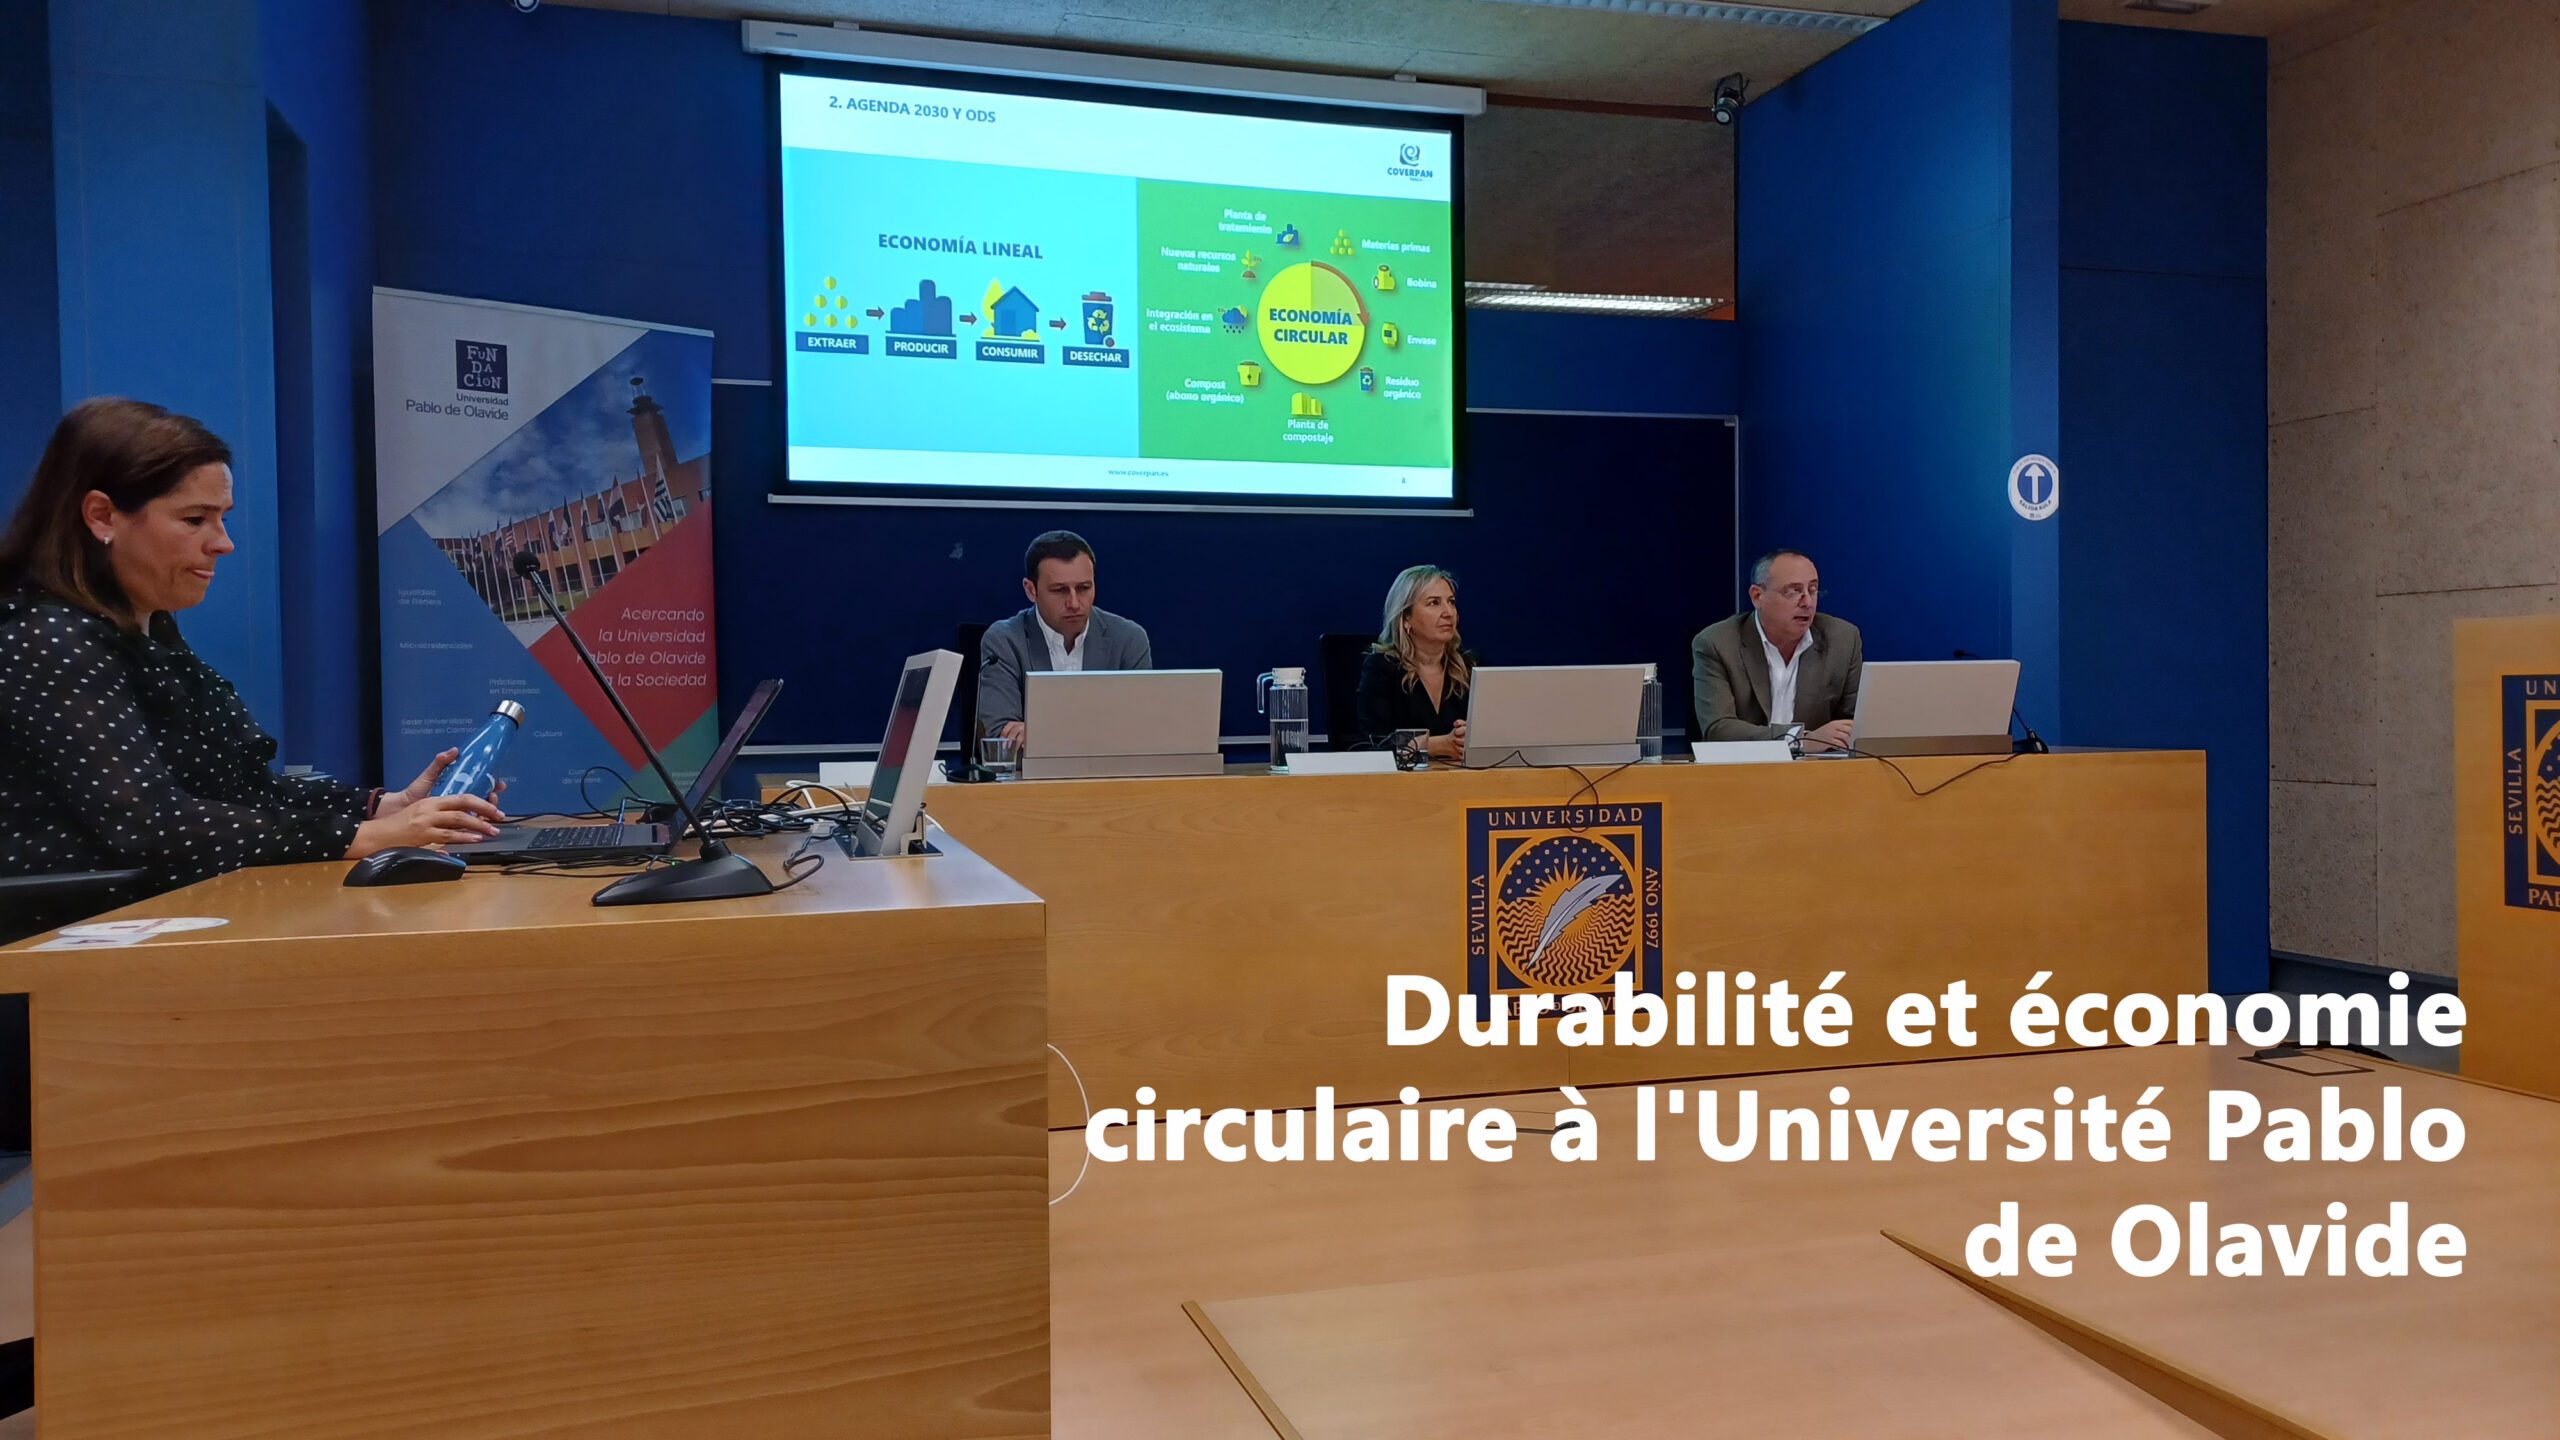 You are currently viewing Conférence sur la durabilité et l’économie circulaire à l’Université Pablo de Olavide